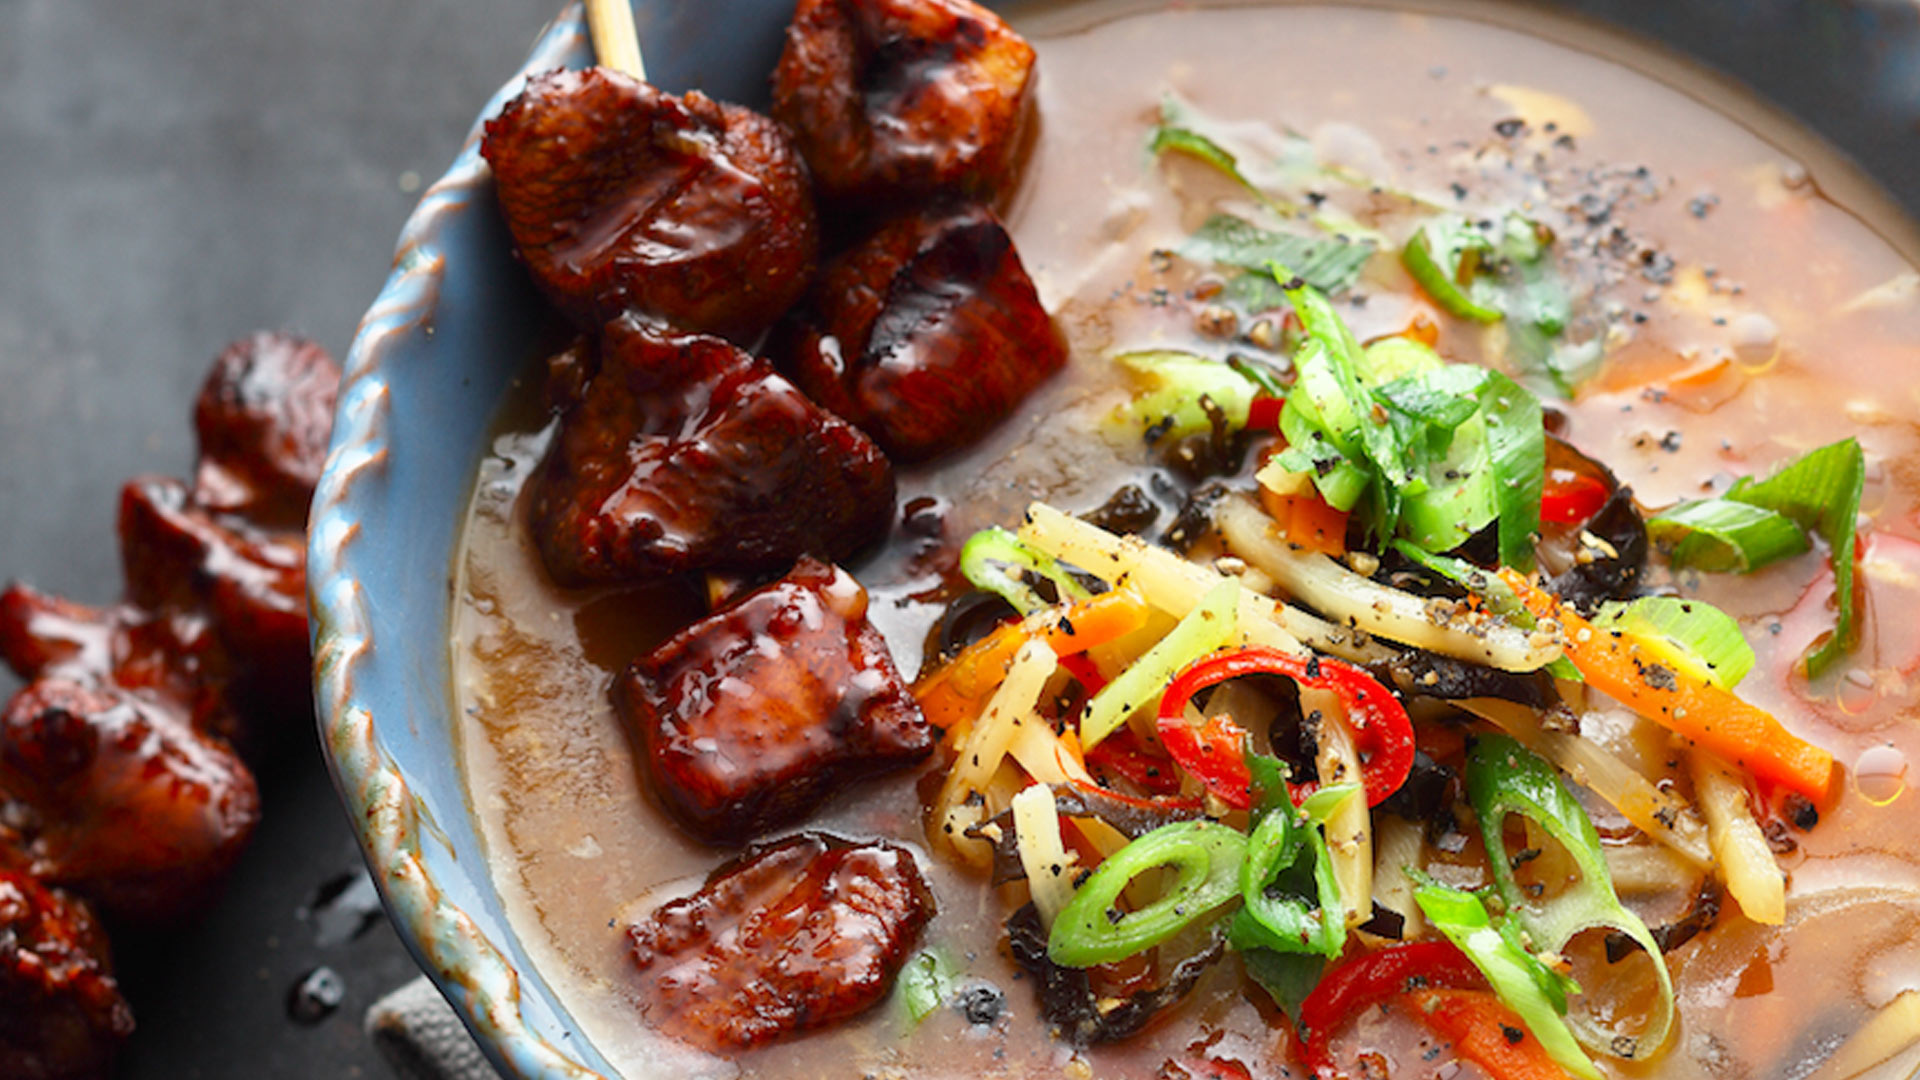  China - Peking-Suppe aus dem Wok mit Hähnchenfleisch und asiatischem Gemüse


